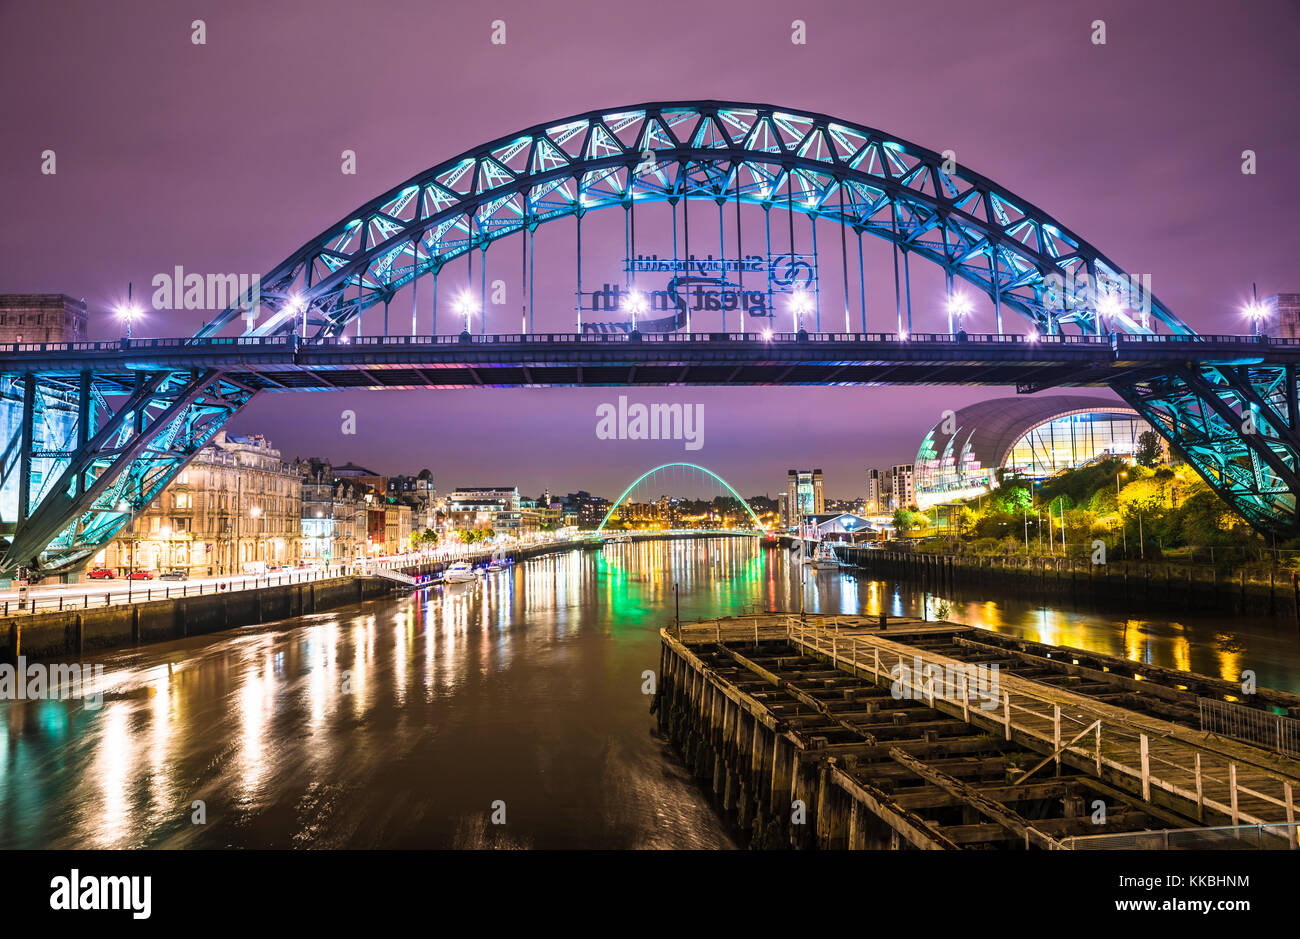 Foto nocturna mirando a lo largo del río Tyne hacia el puente Tyne y el puente Gateshead Millennium, Newcastle upon Tyne, Tyne y Wear, Inglaterra Foto de stock